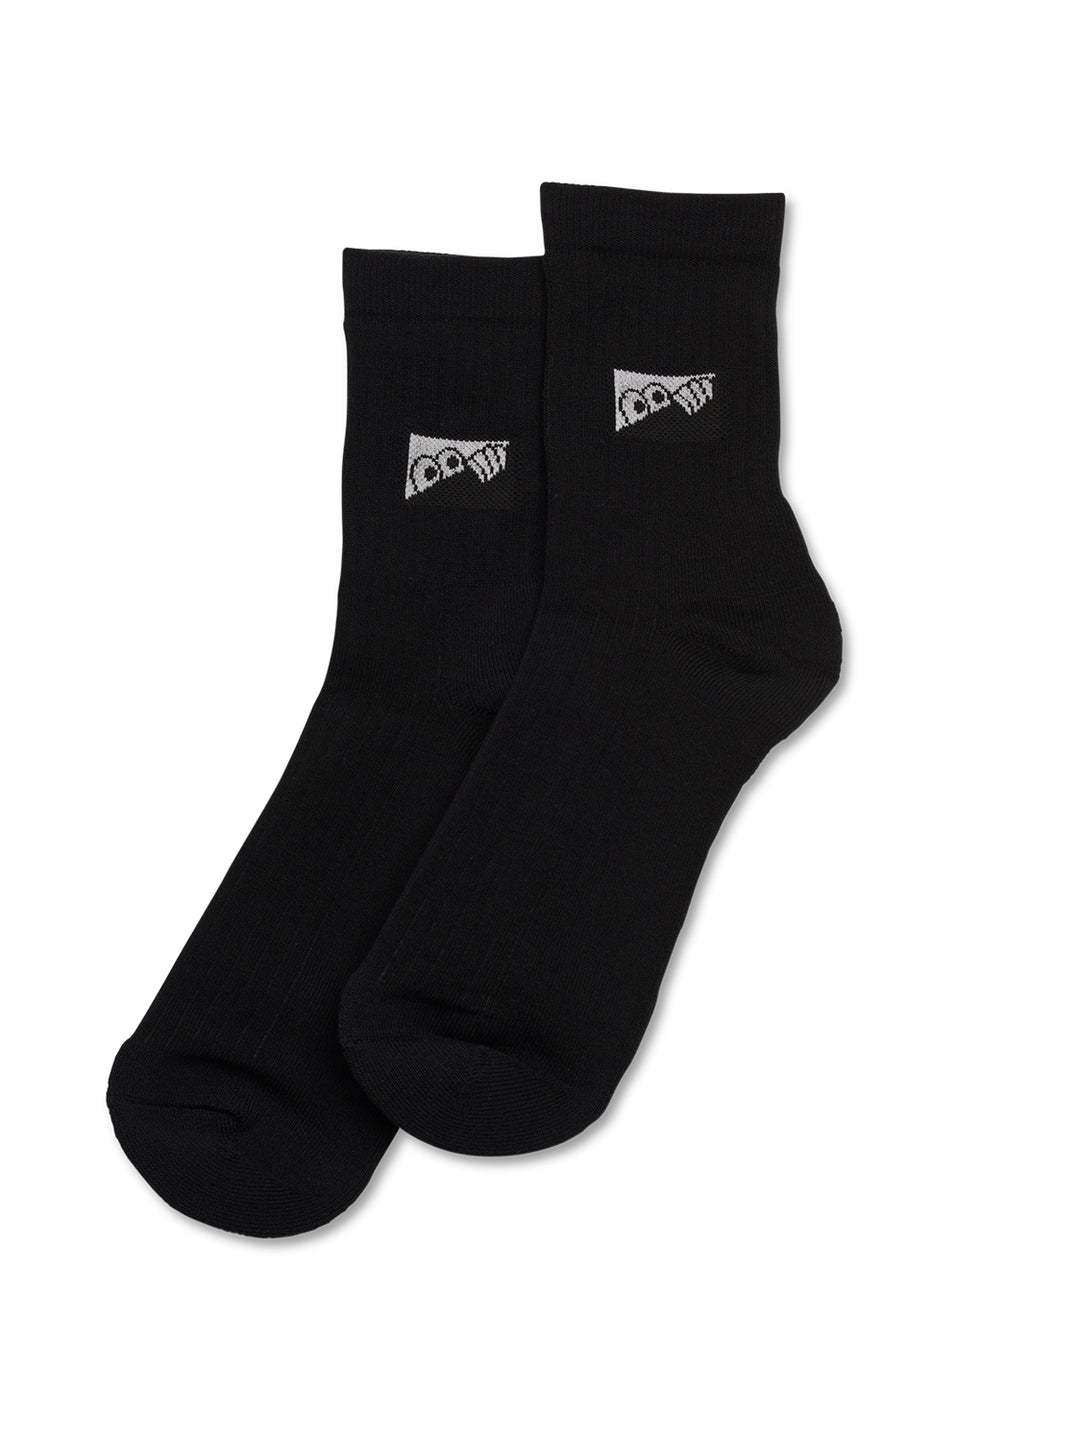 Last Resort Heel Tab Dress Socks - Black